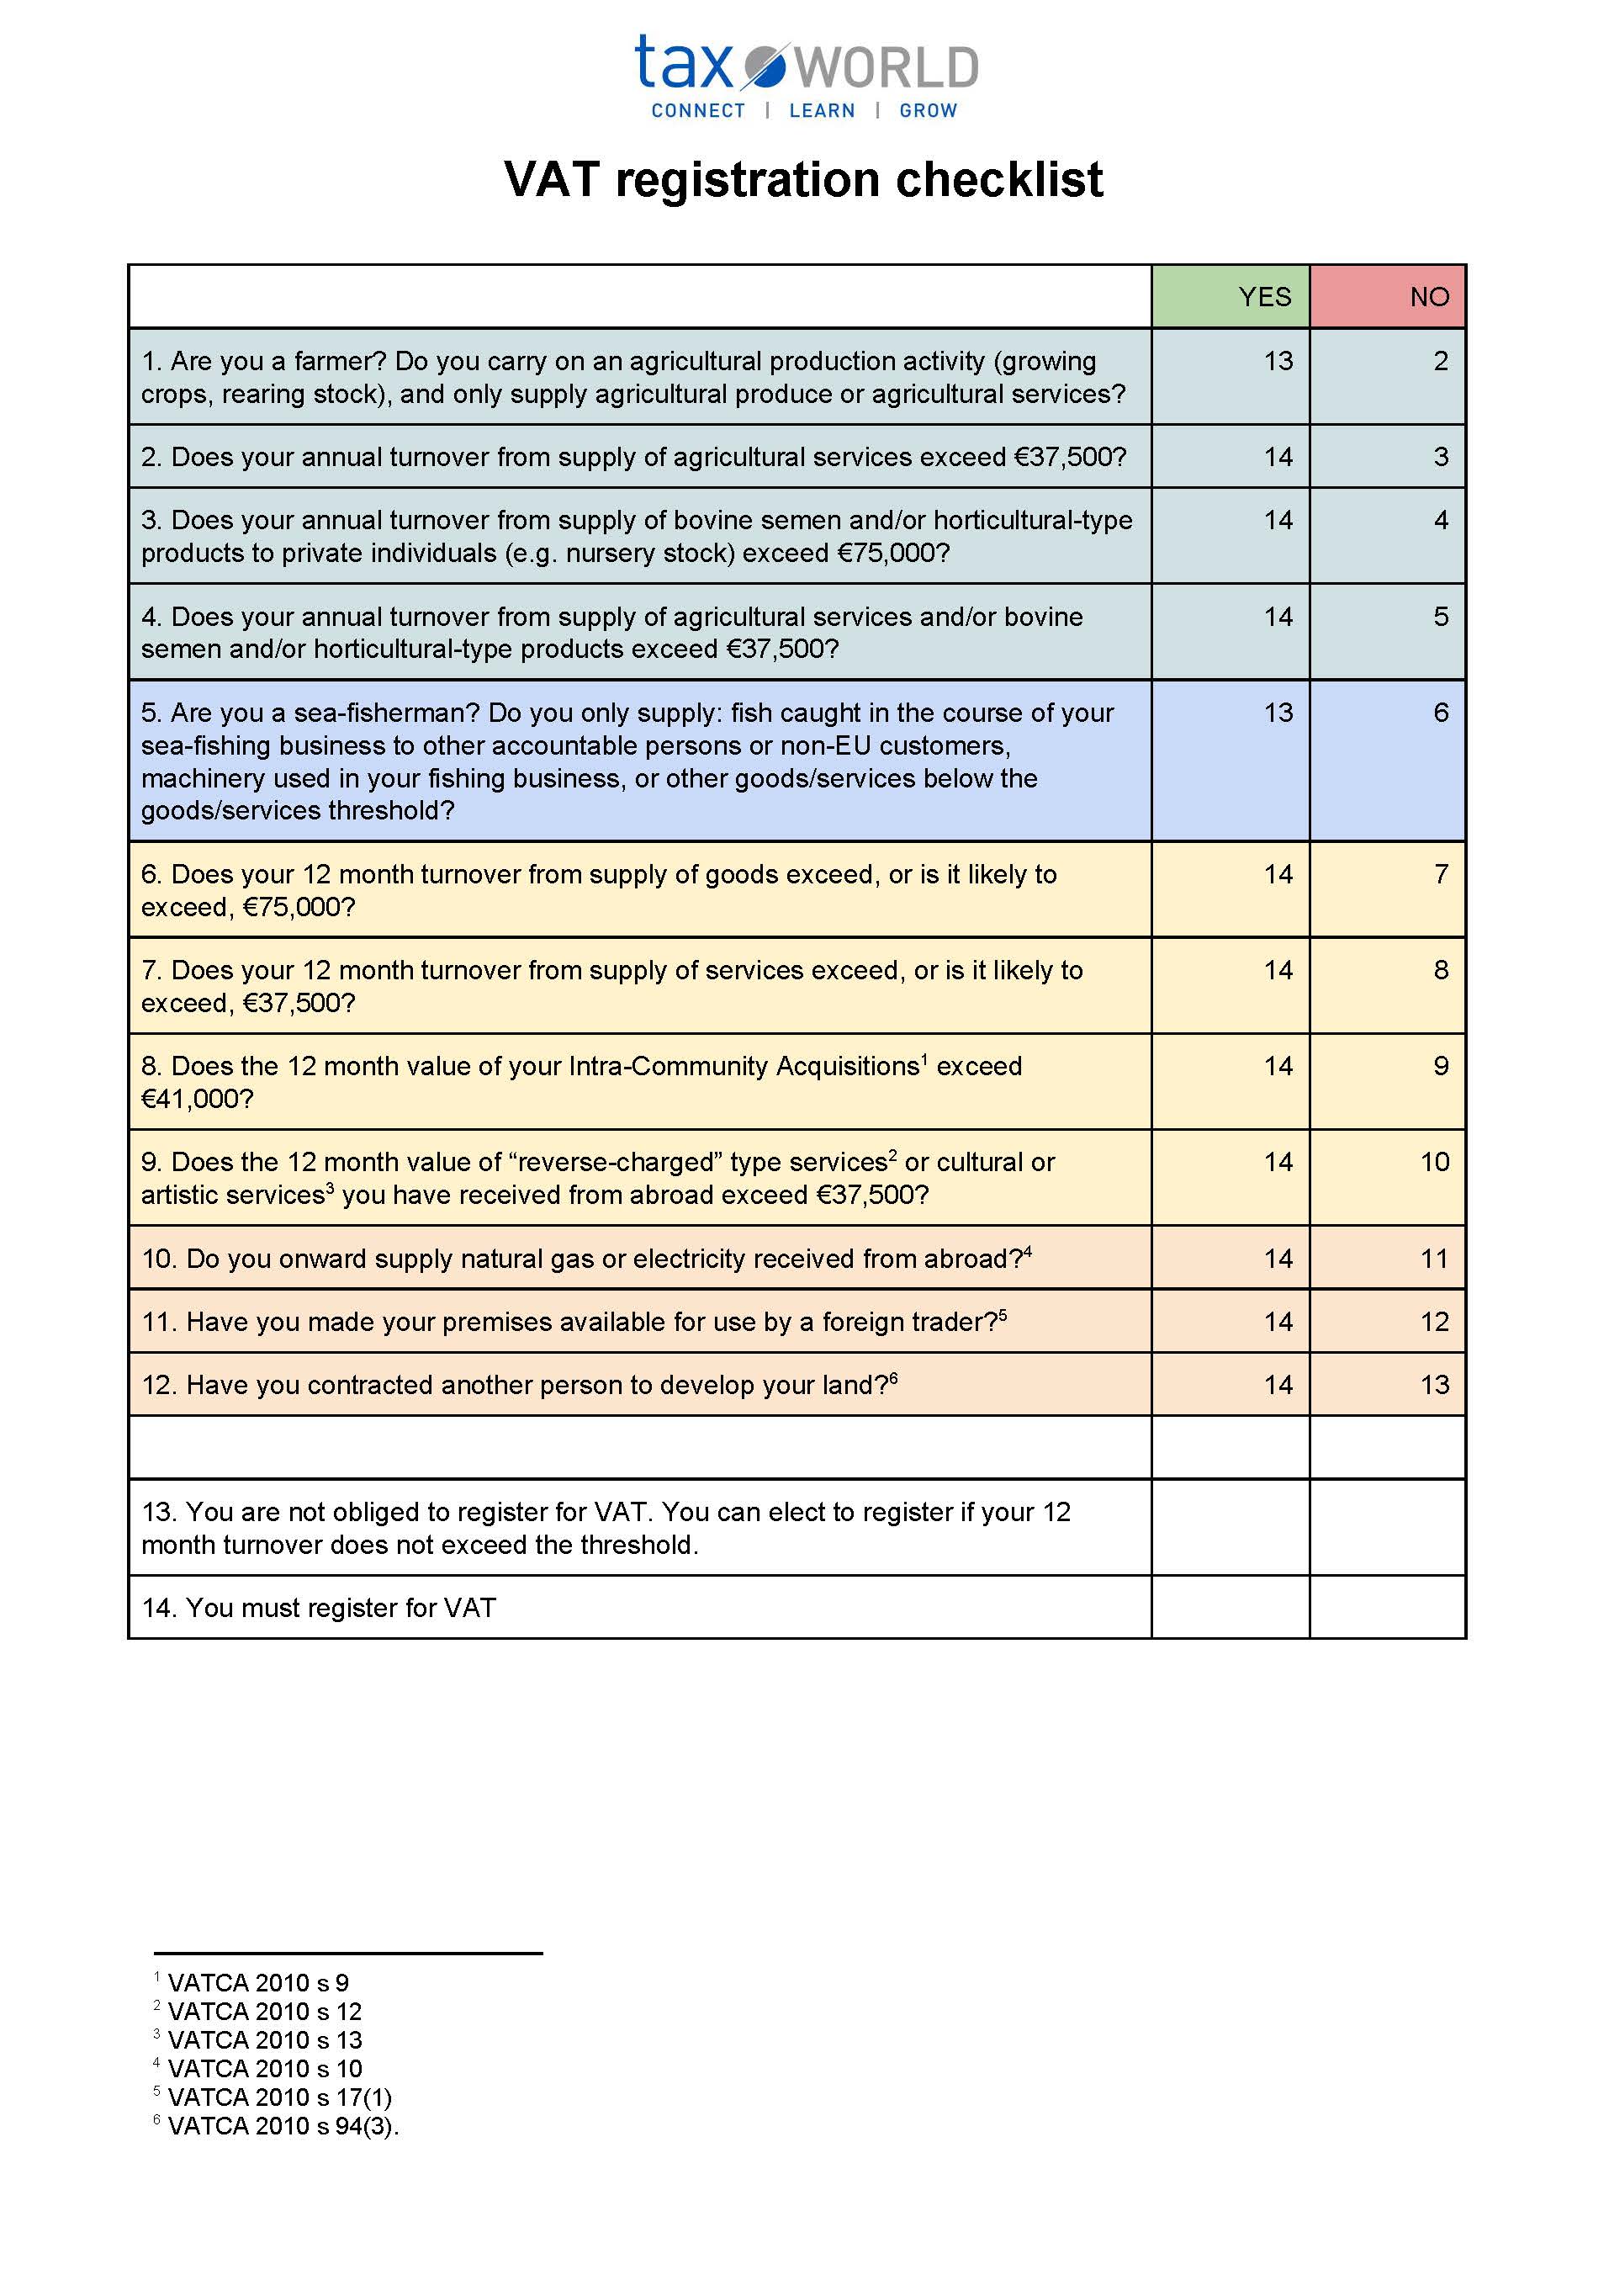 VAT registration checklist (1)